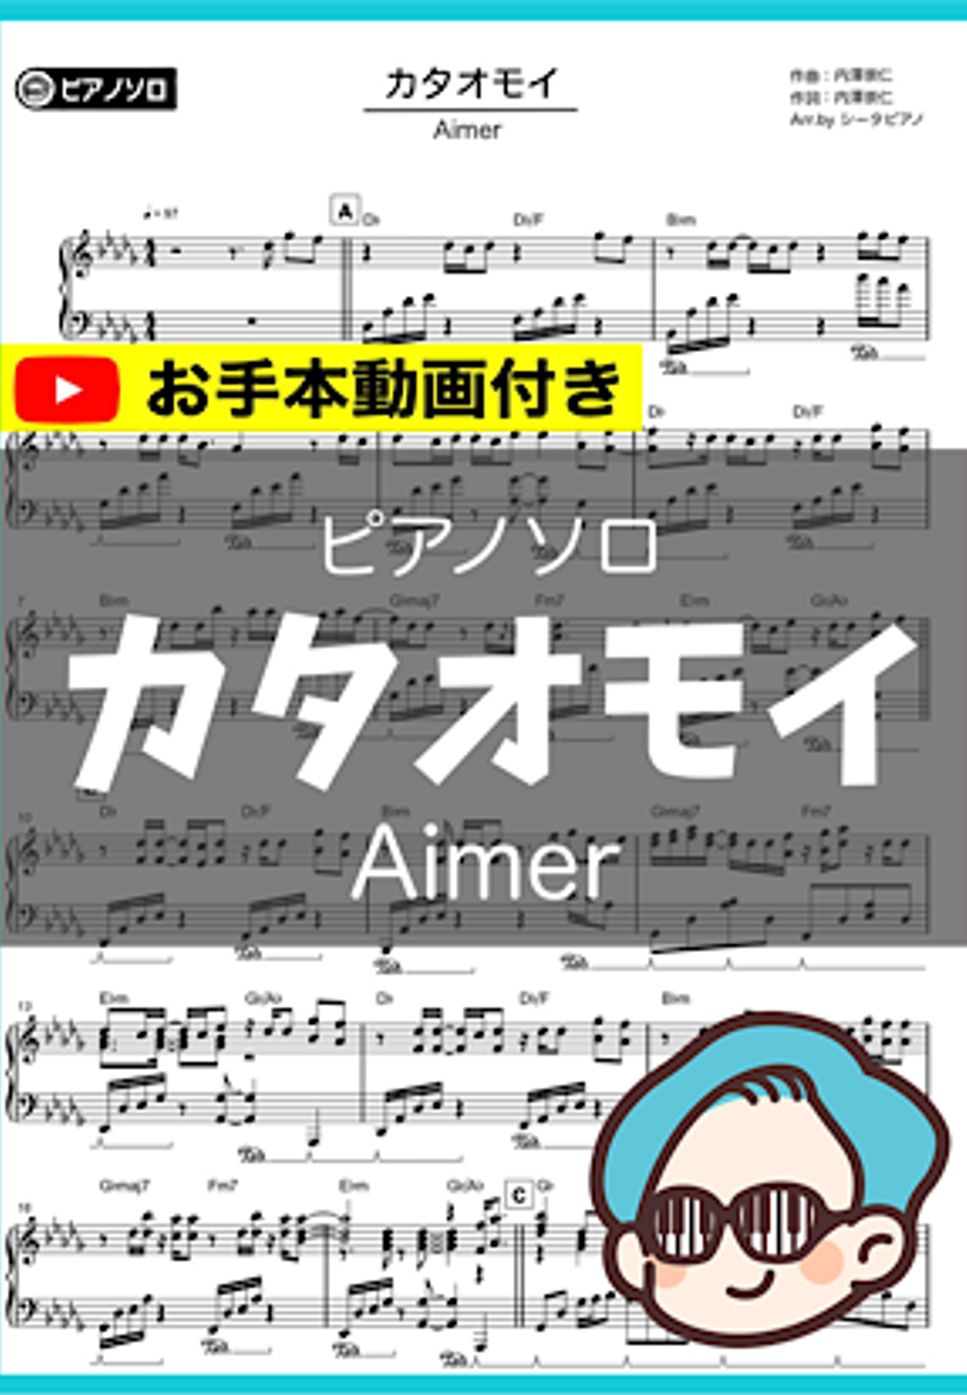 Aimer - カタオモイ by シータピアノ